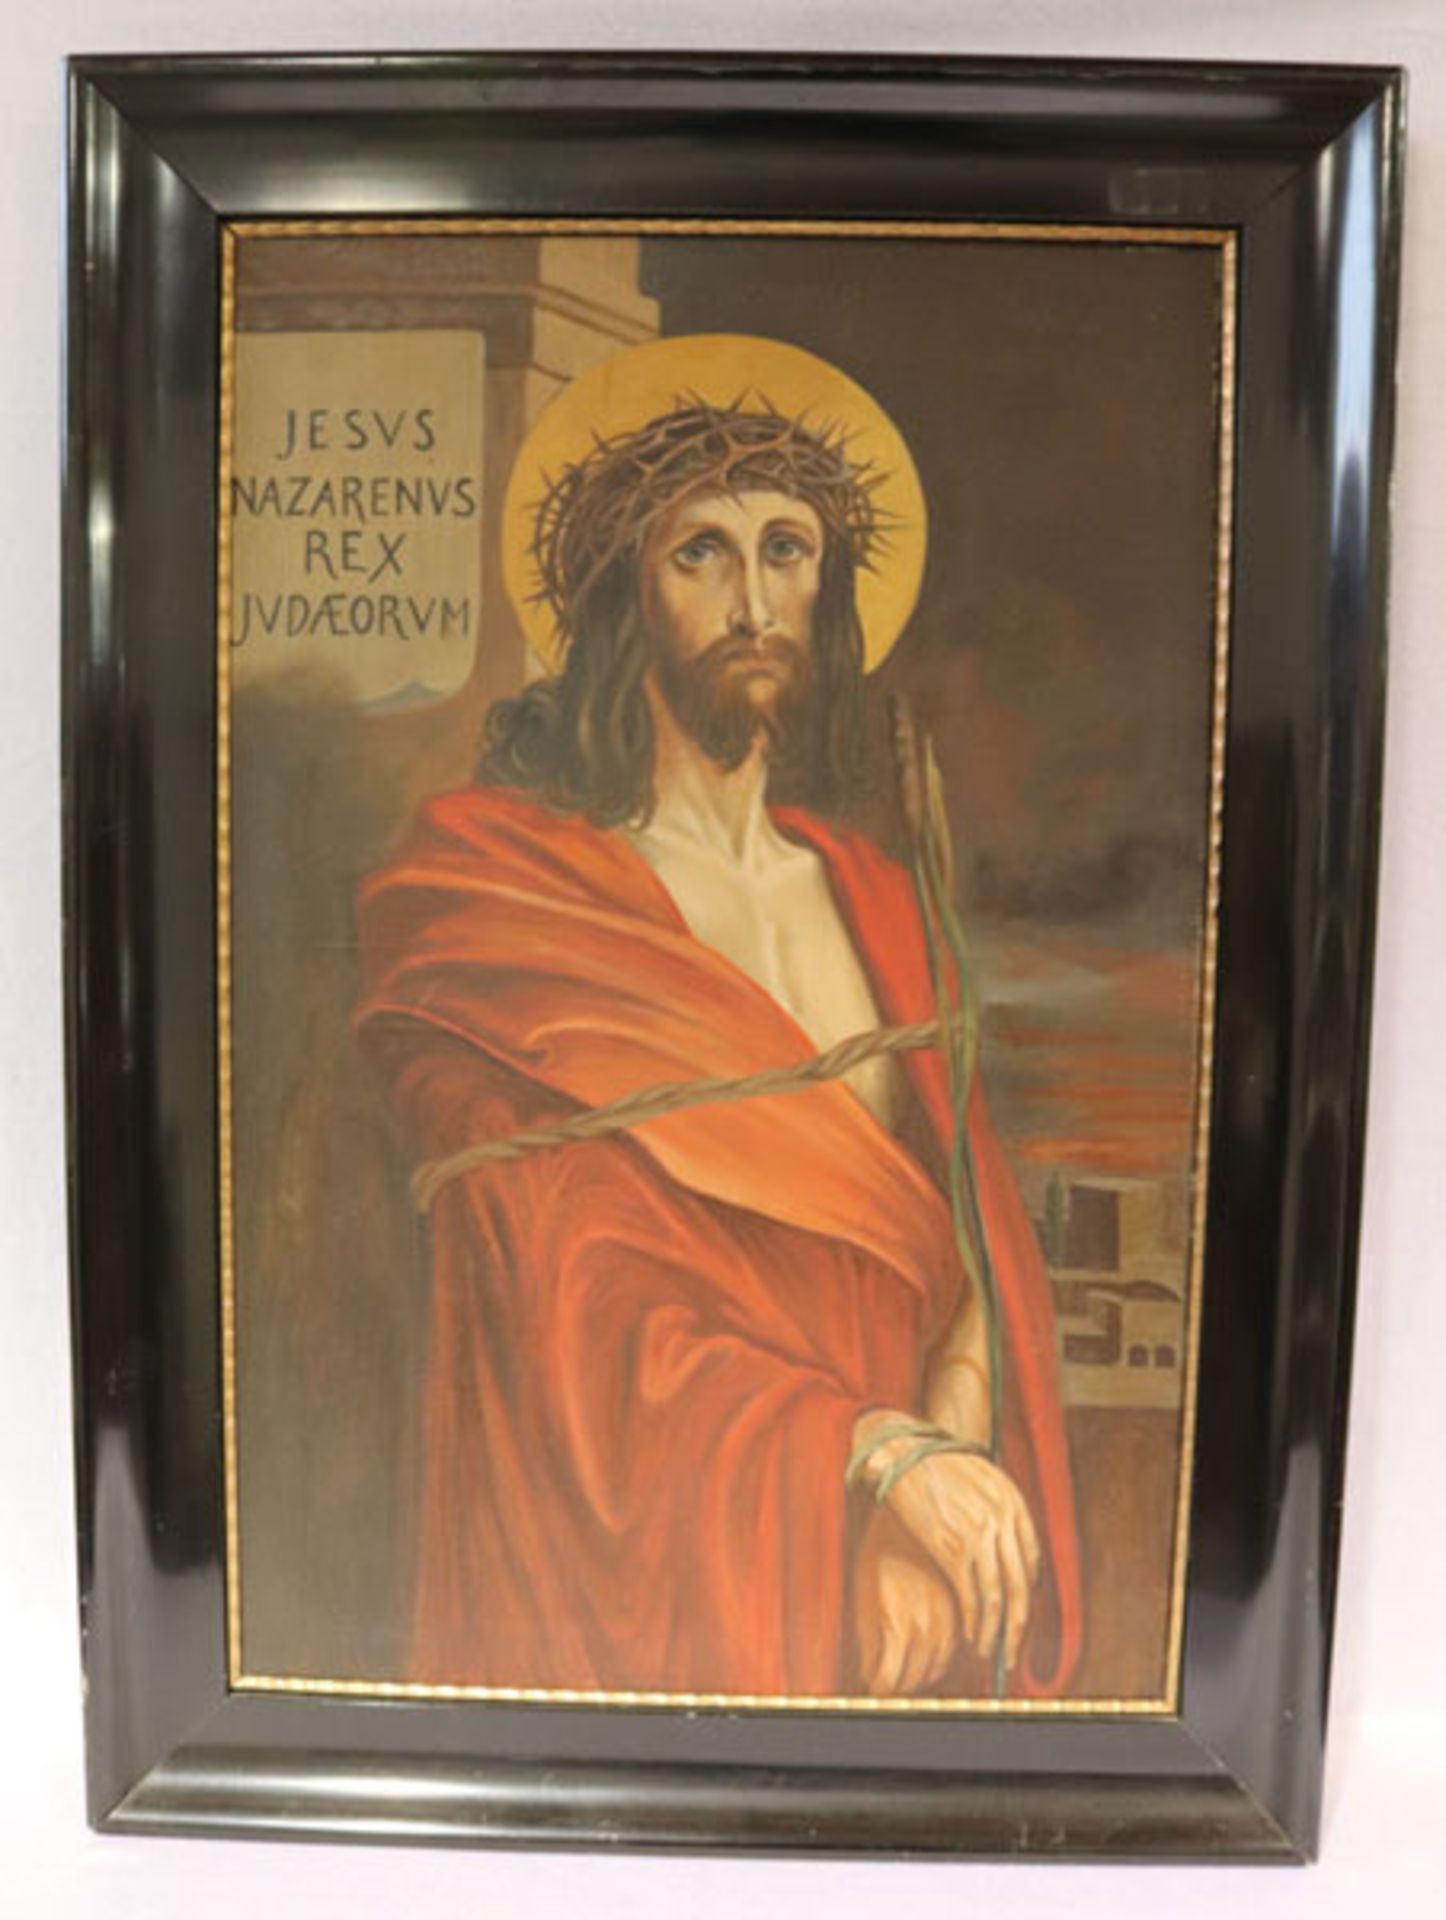 Gemälde ÖL/LW 'Jesus Nazarenus Rex Judaeorum', spät 19. Jahrhundert, gerahmt, Rahmen beschädigt,